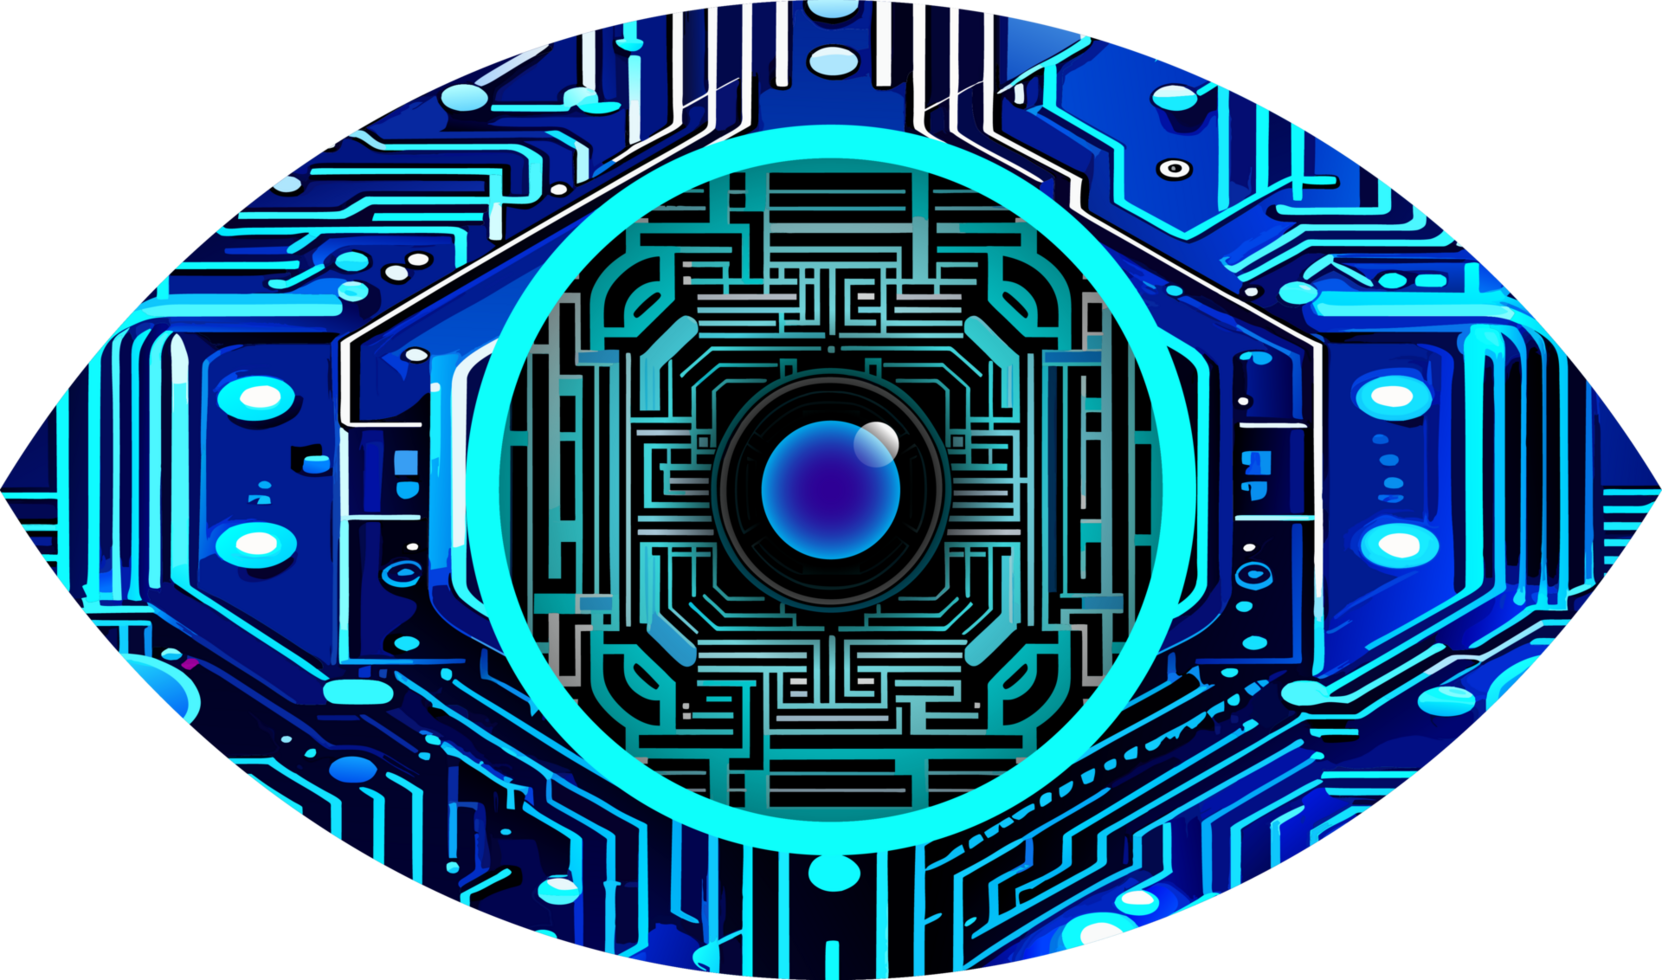 blå ögon cyber krets framtida teknik koncept bakgrund png